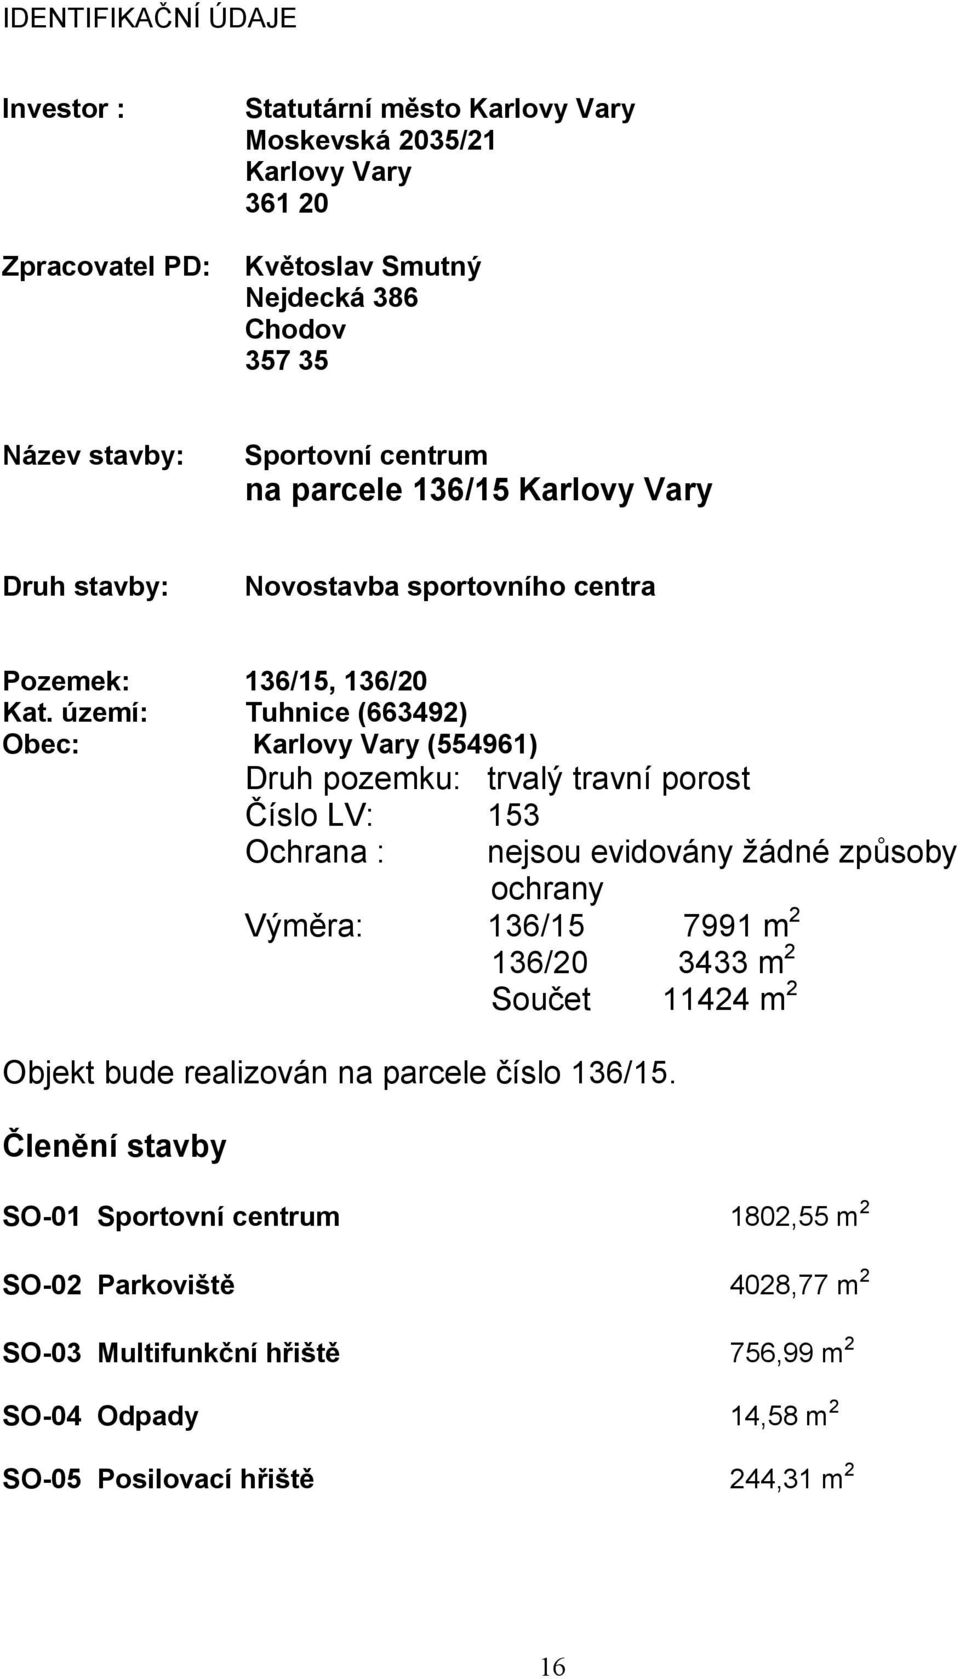 území: Tuhnice (663492) Obec: Karlovy Vary (554961) Druh pozemku: trvalý travní porost Číslo LV: 153 Ochrana : nejsou evidovány žádné způsoby ochrany Výměra: 136/15 7991 m 2 136/20